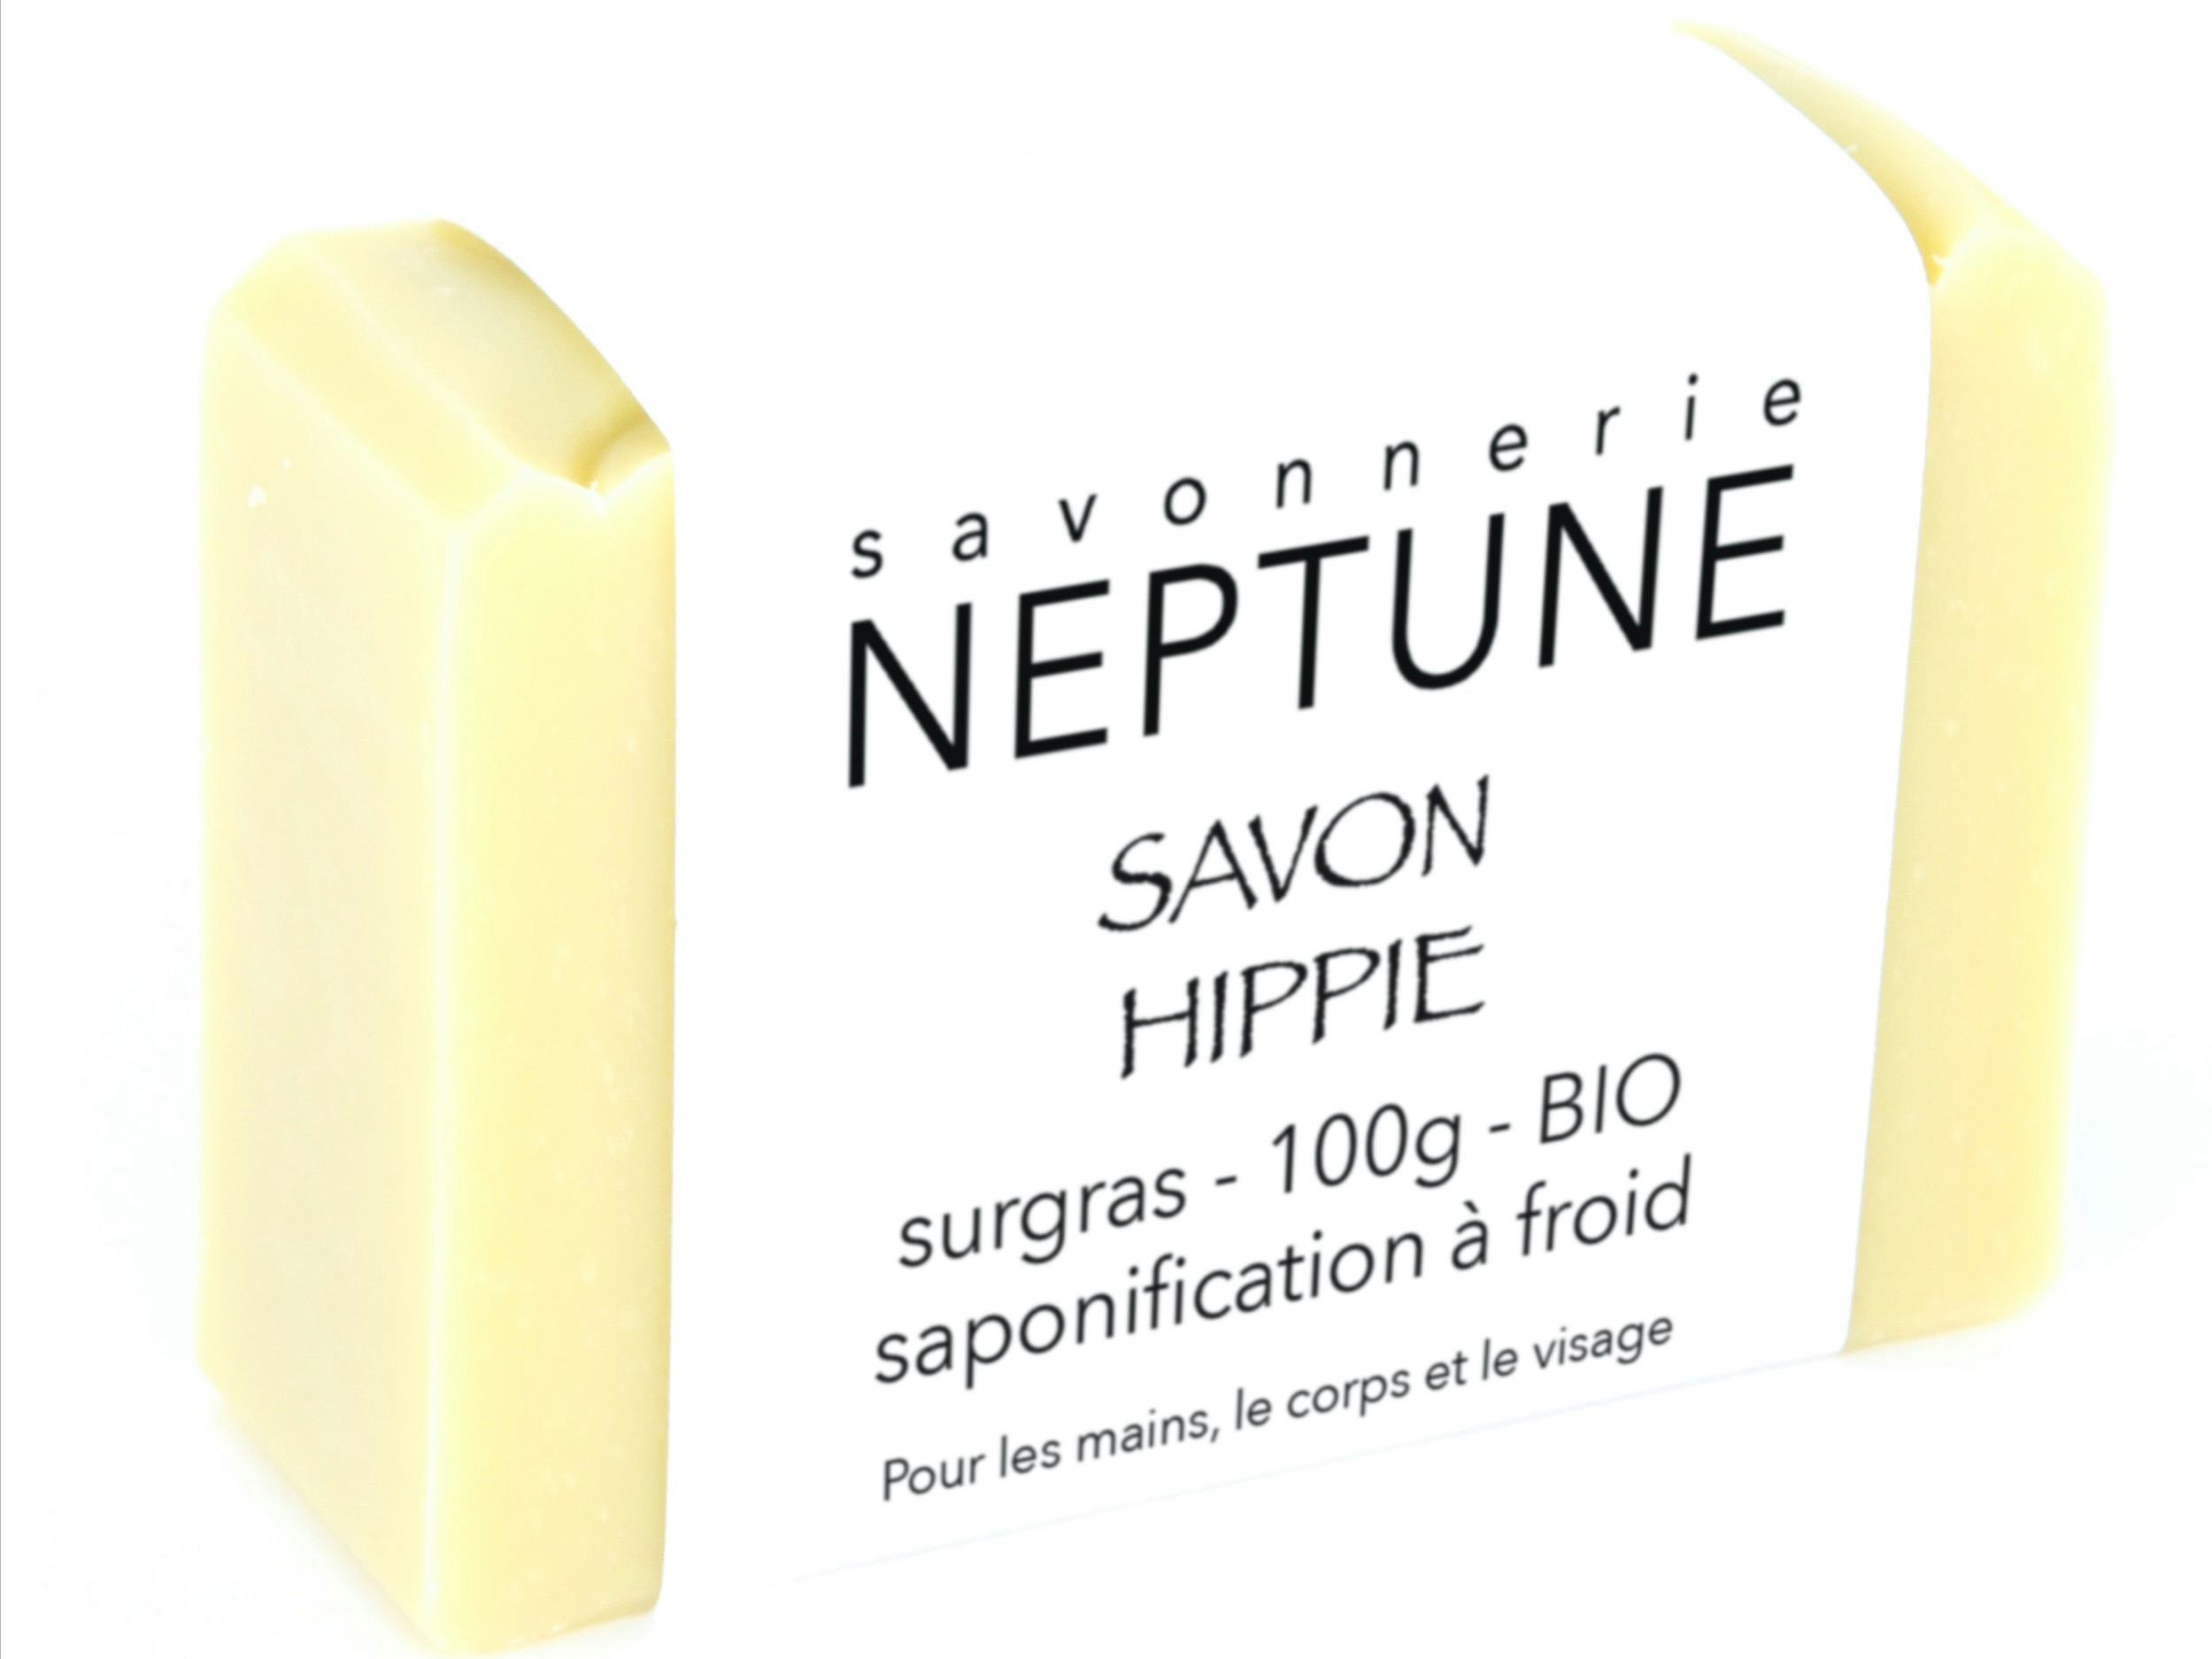 Savon hippie - bio, handwerkliches Produkt für den Direktverkauf in der Schweiz